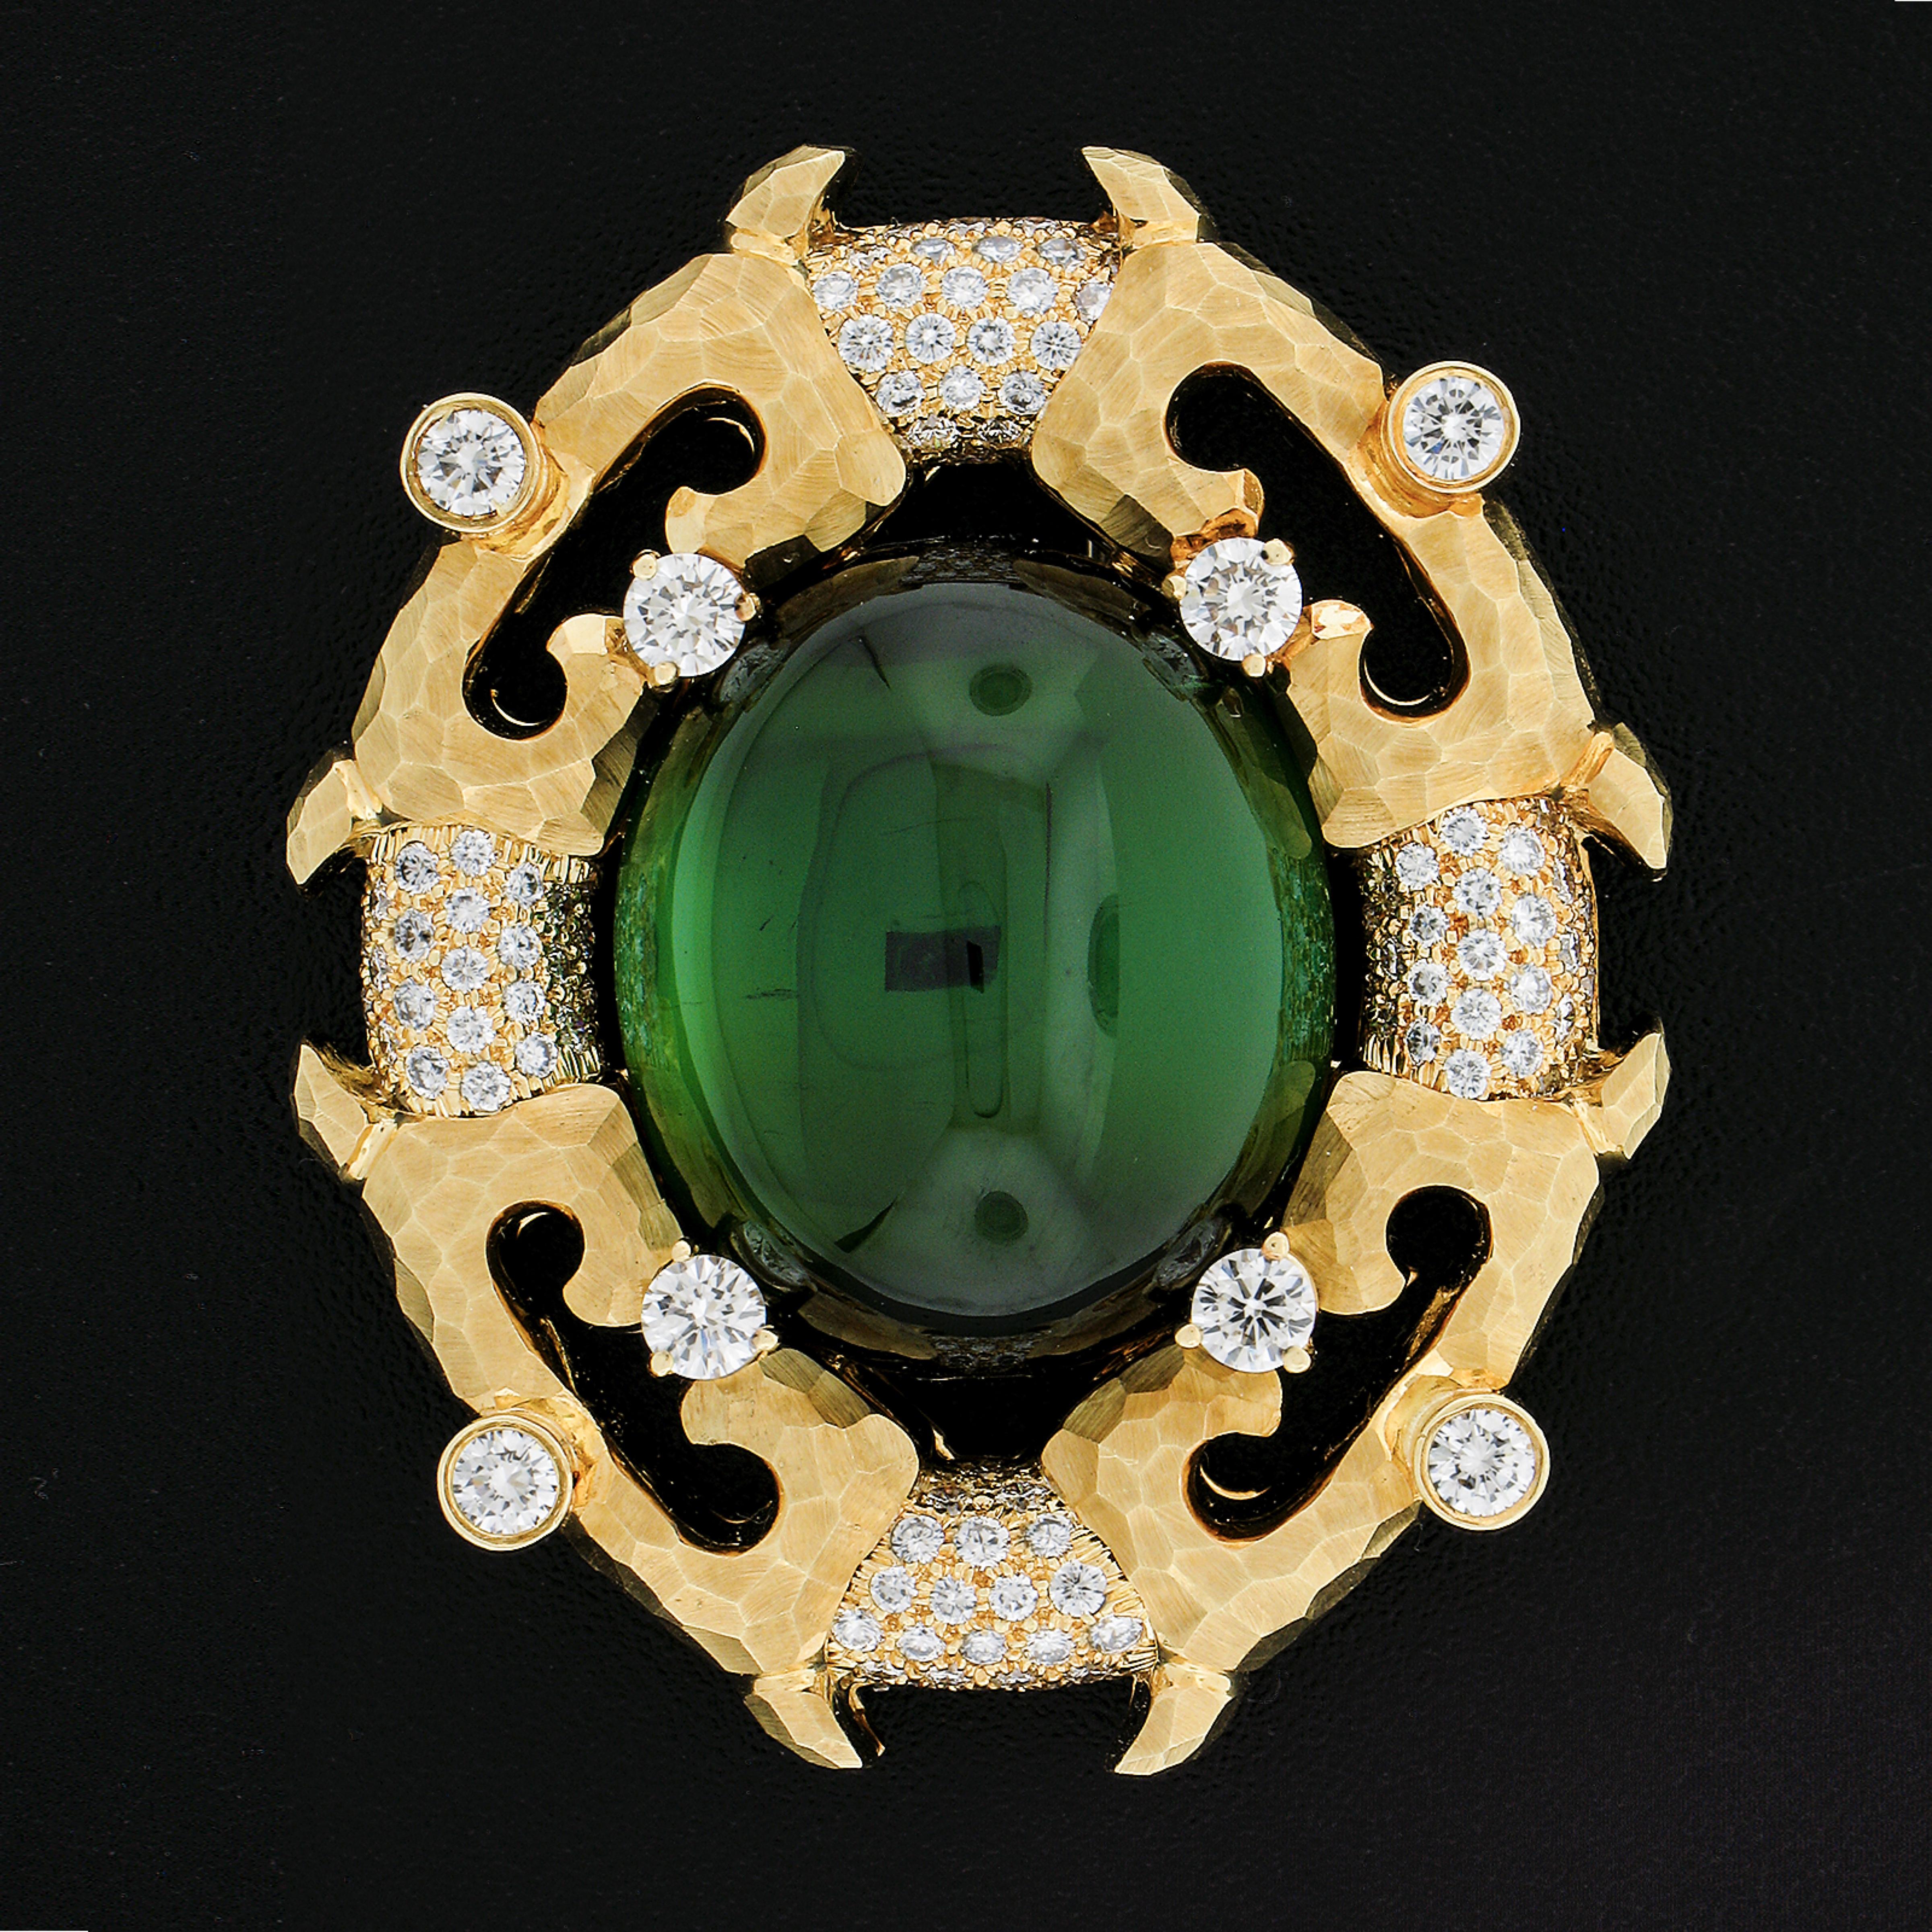 Henry Dunay ist bekannt für hochwertige Edelsteine, Diamanten und Goldverarbeitung. All das ist in diesem großartigen Kunstwerk zu sehen. Der grüne Turmalin in der Mitte ist sauber und lebhaft in der Farbe. Er wird von verschiedenen farblosen